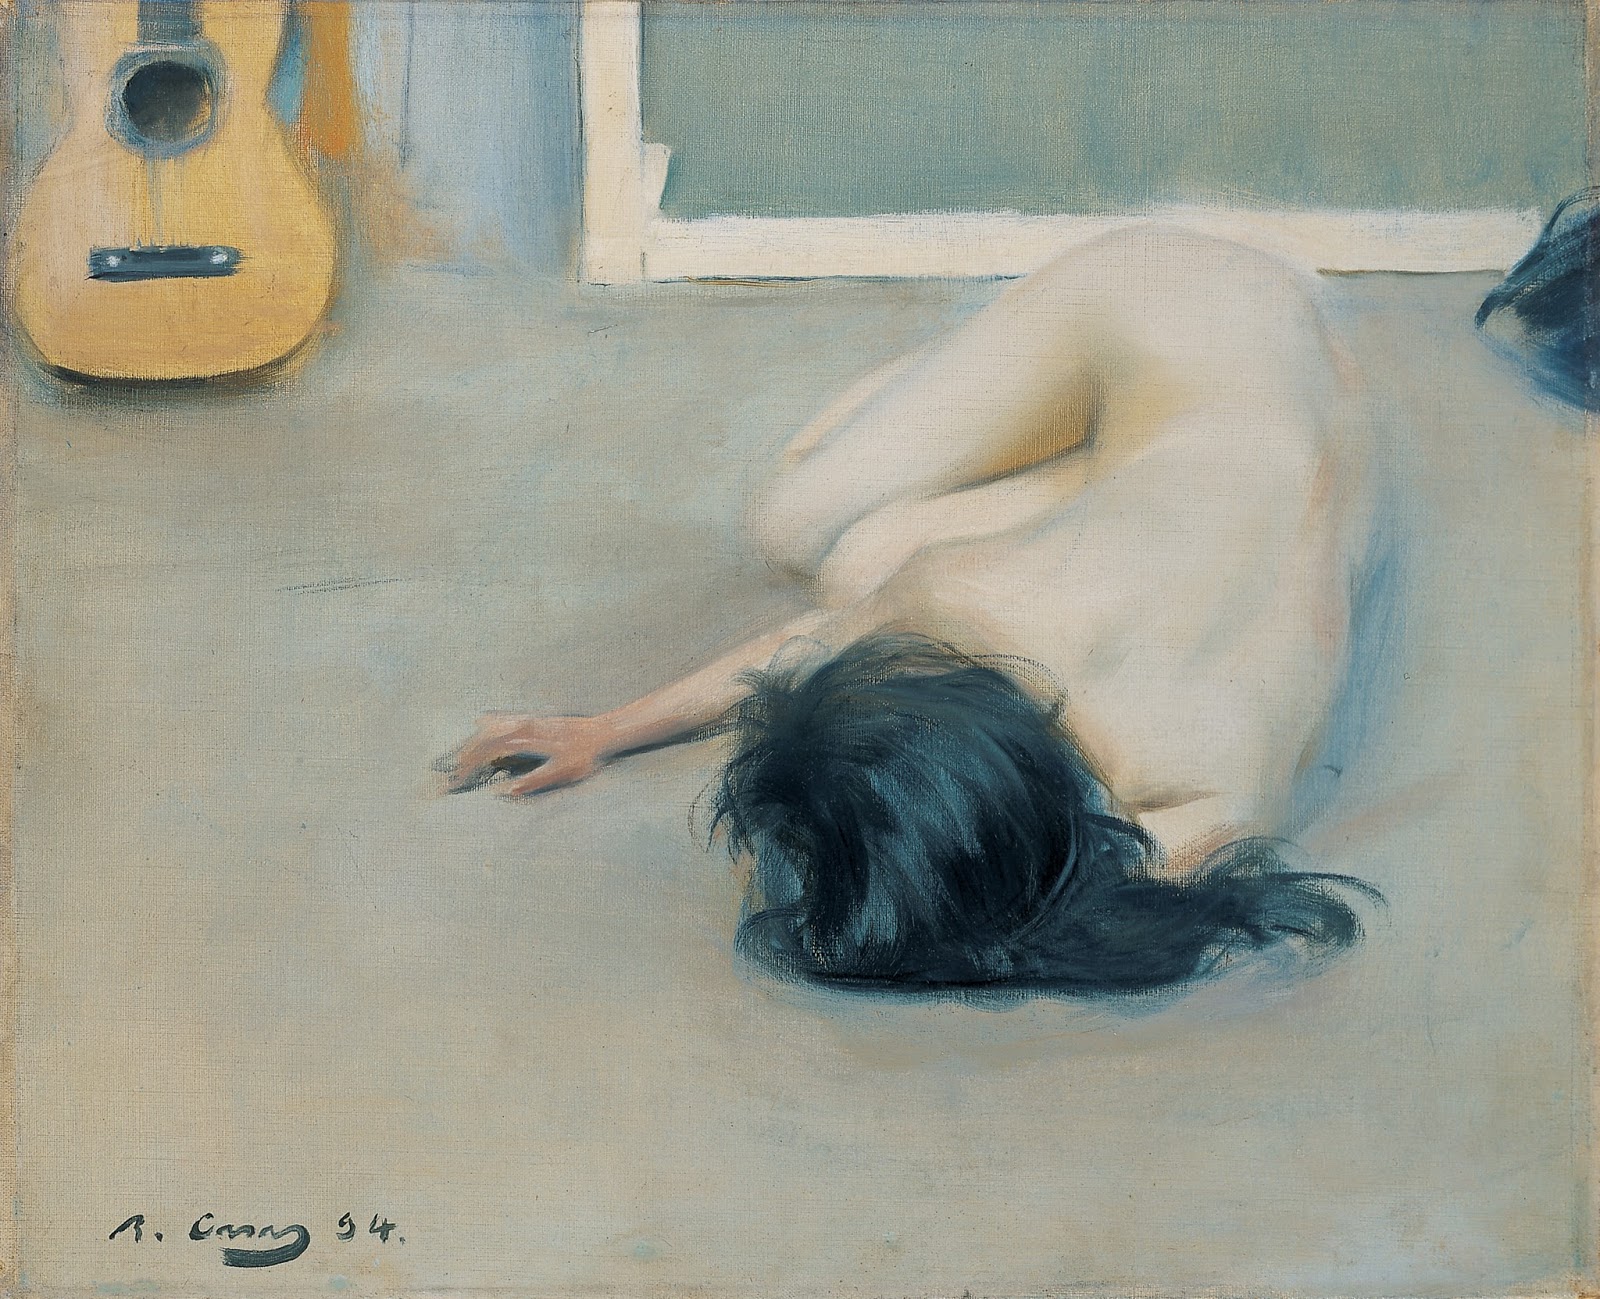 Akt z gitarą by Ramon Casas - 1894 - 46.3 x 56.6 cm 